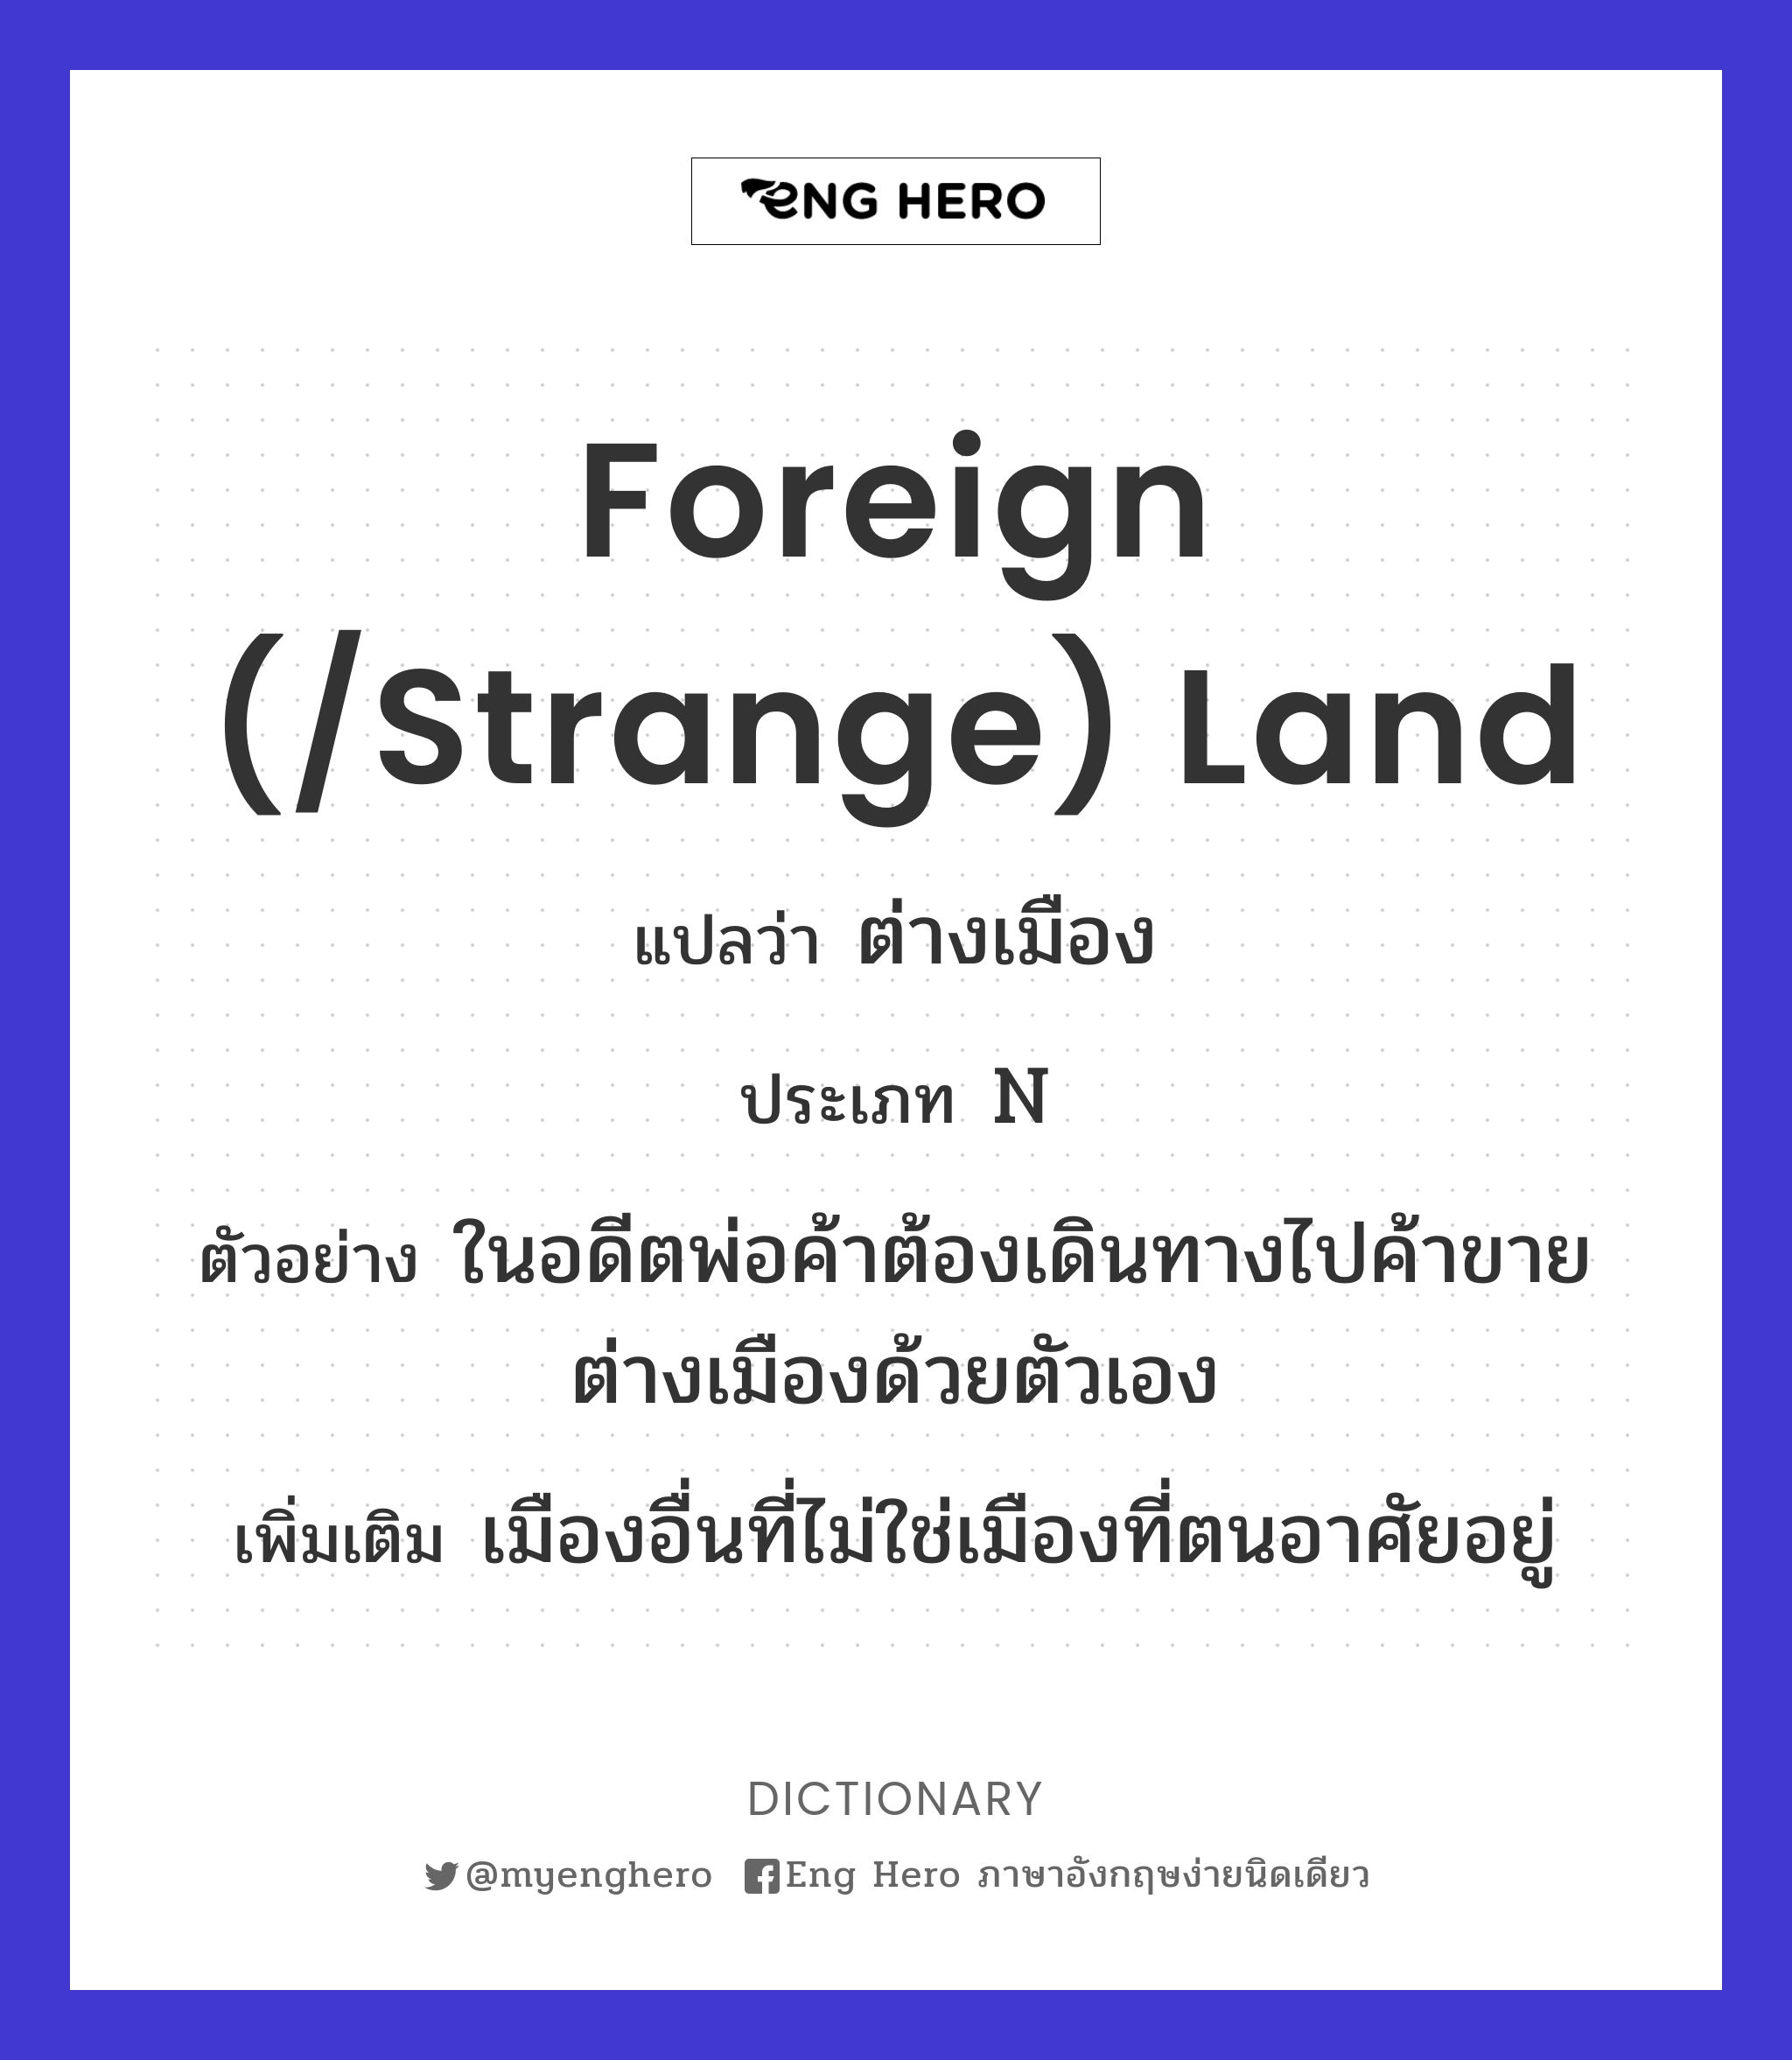 foreign (/strange) land